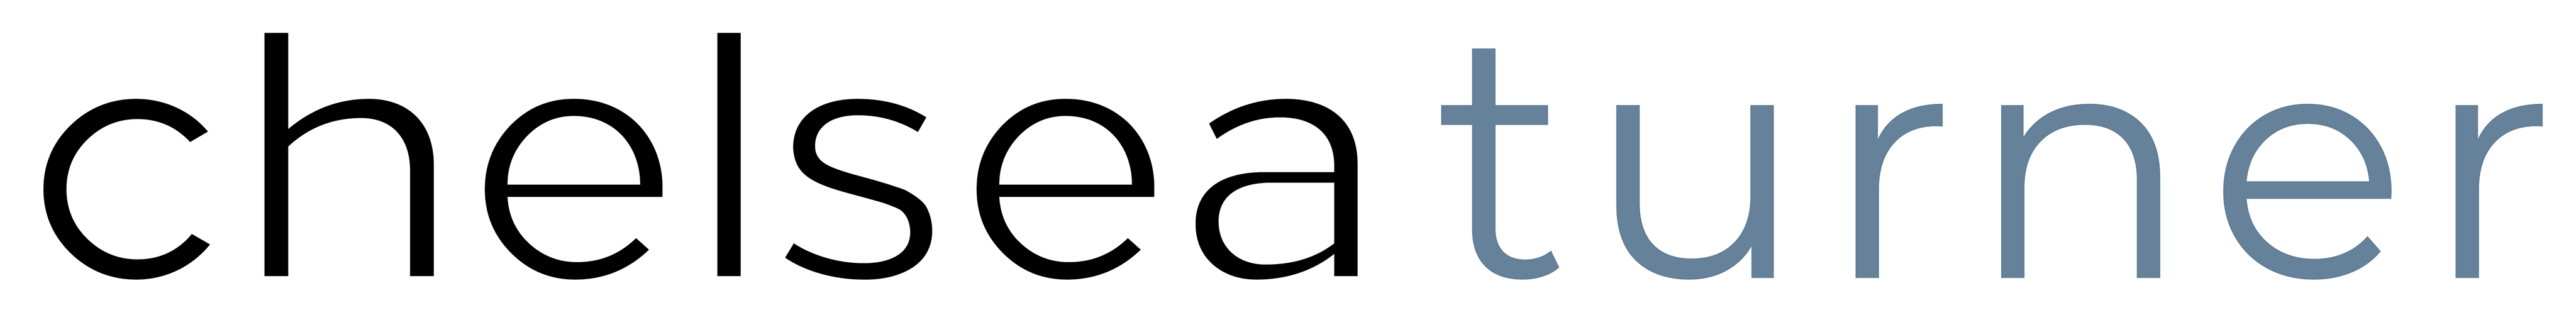 Chelsea Turner logo